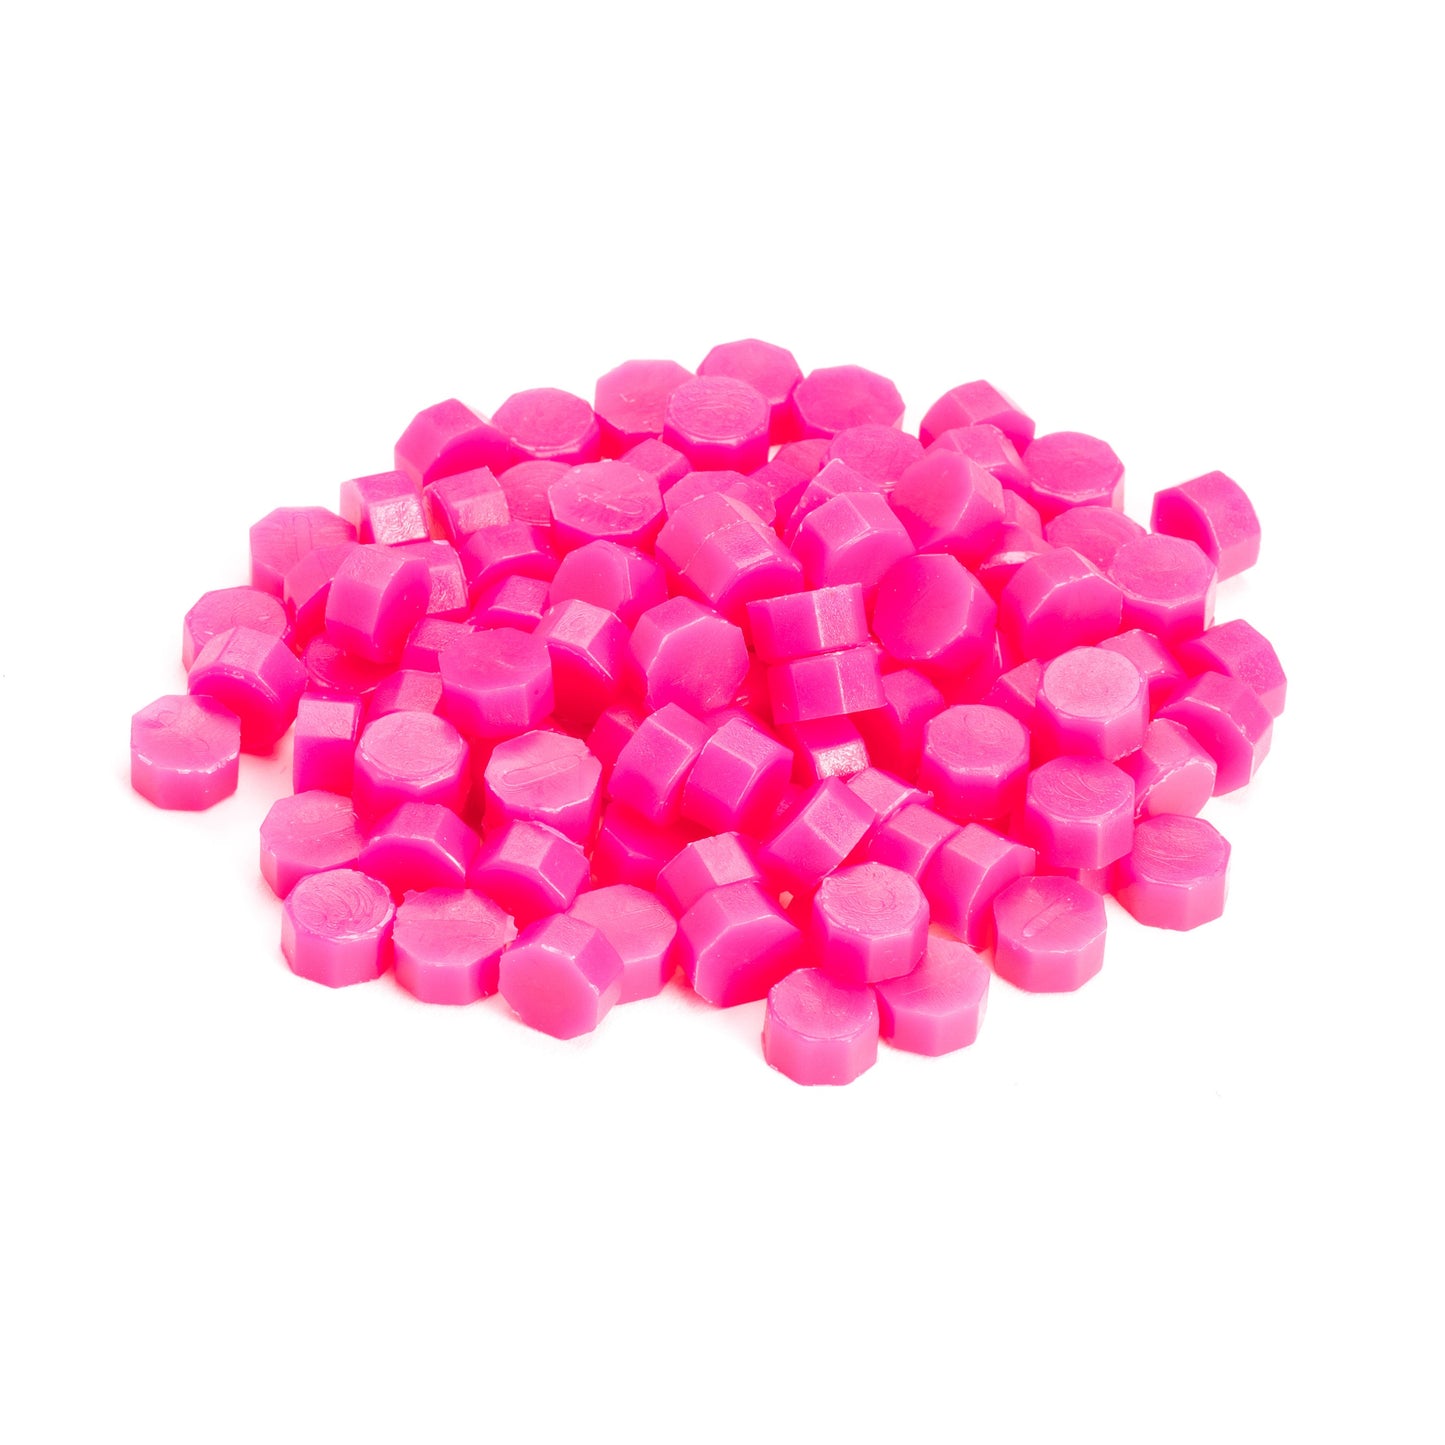 Hot Pink Wax Beads Bulk